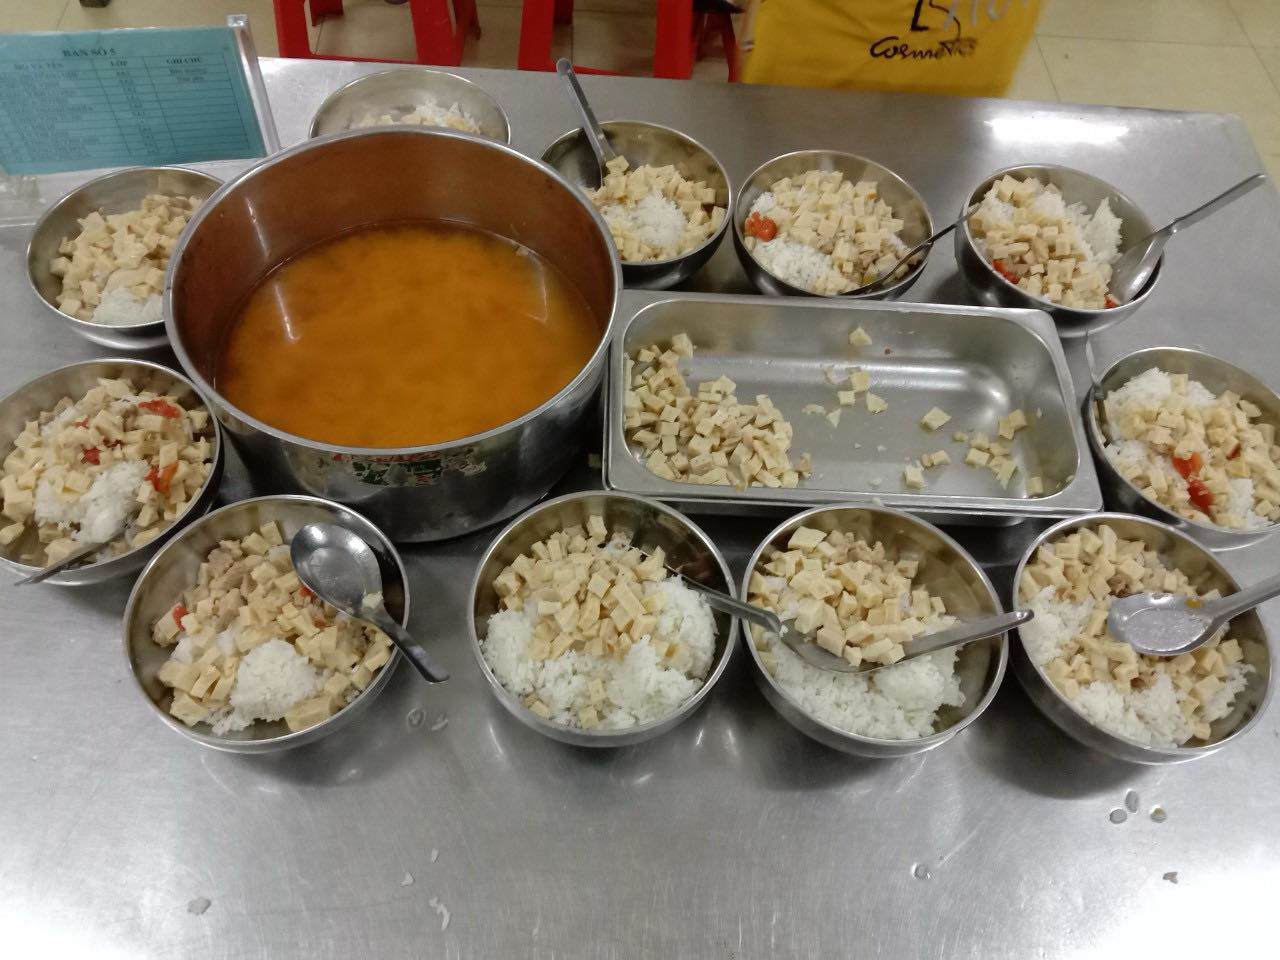 Hình ảnh bữa ăn tại trường bán trú sau khi bị tố cho học sinh ăn 2 gói mì tôm chan cơm - 7